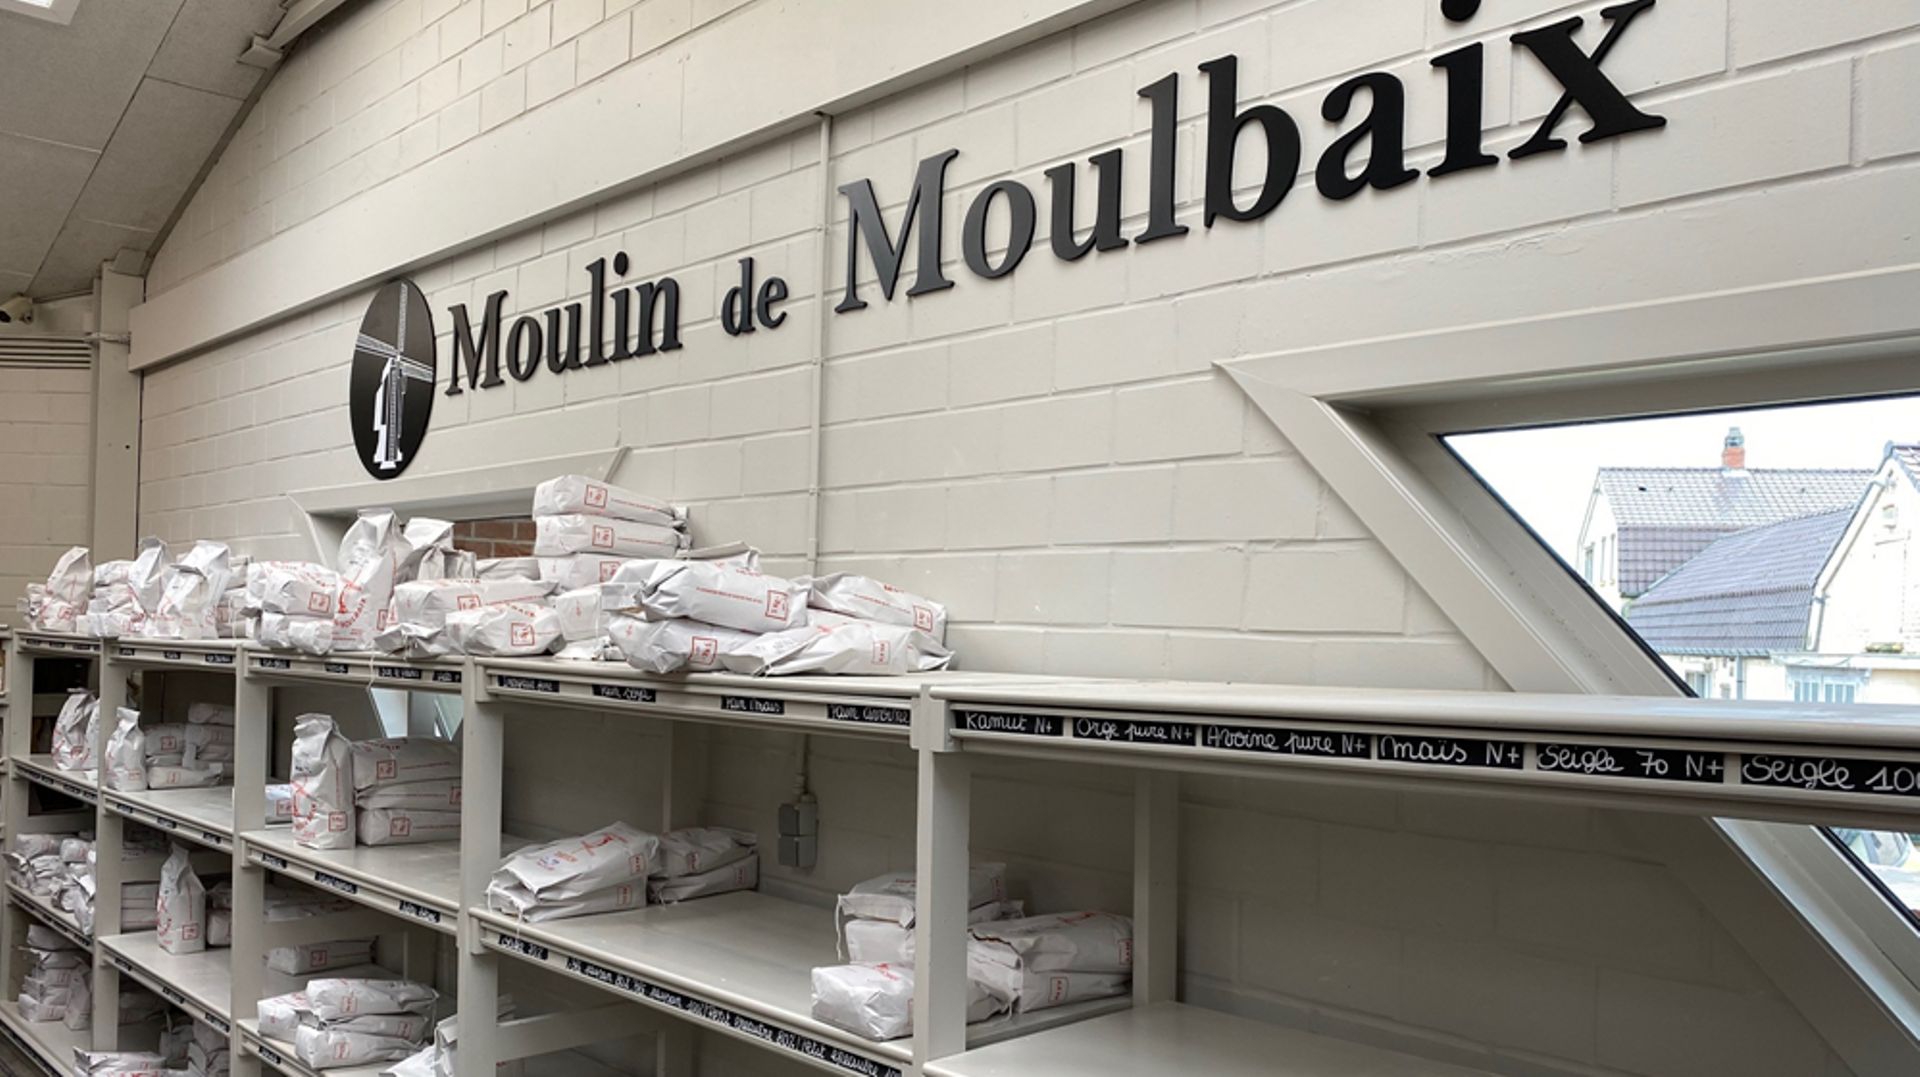 Au Moulin à vent de Moulbaix, dans le magasin où se vend la farine, les rayons se vident à vue d’œil.